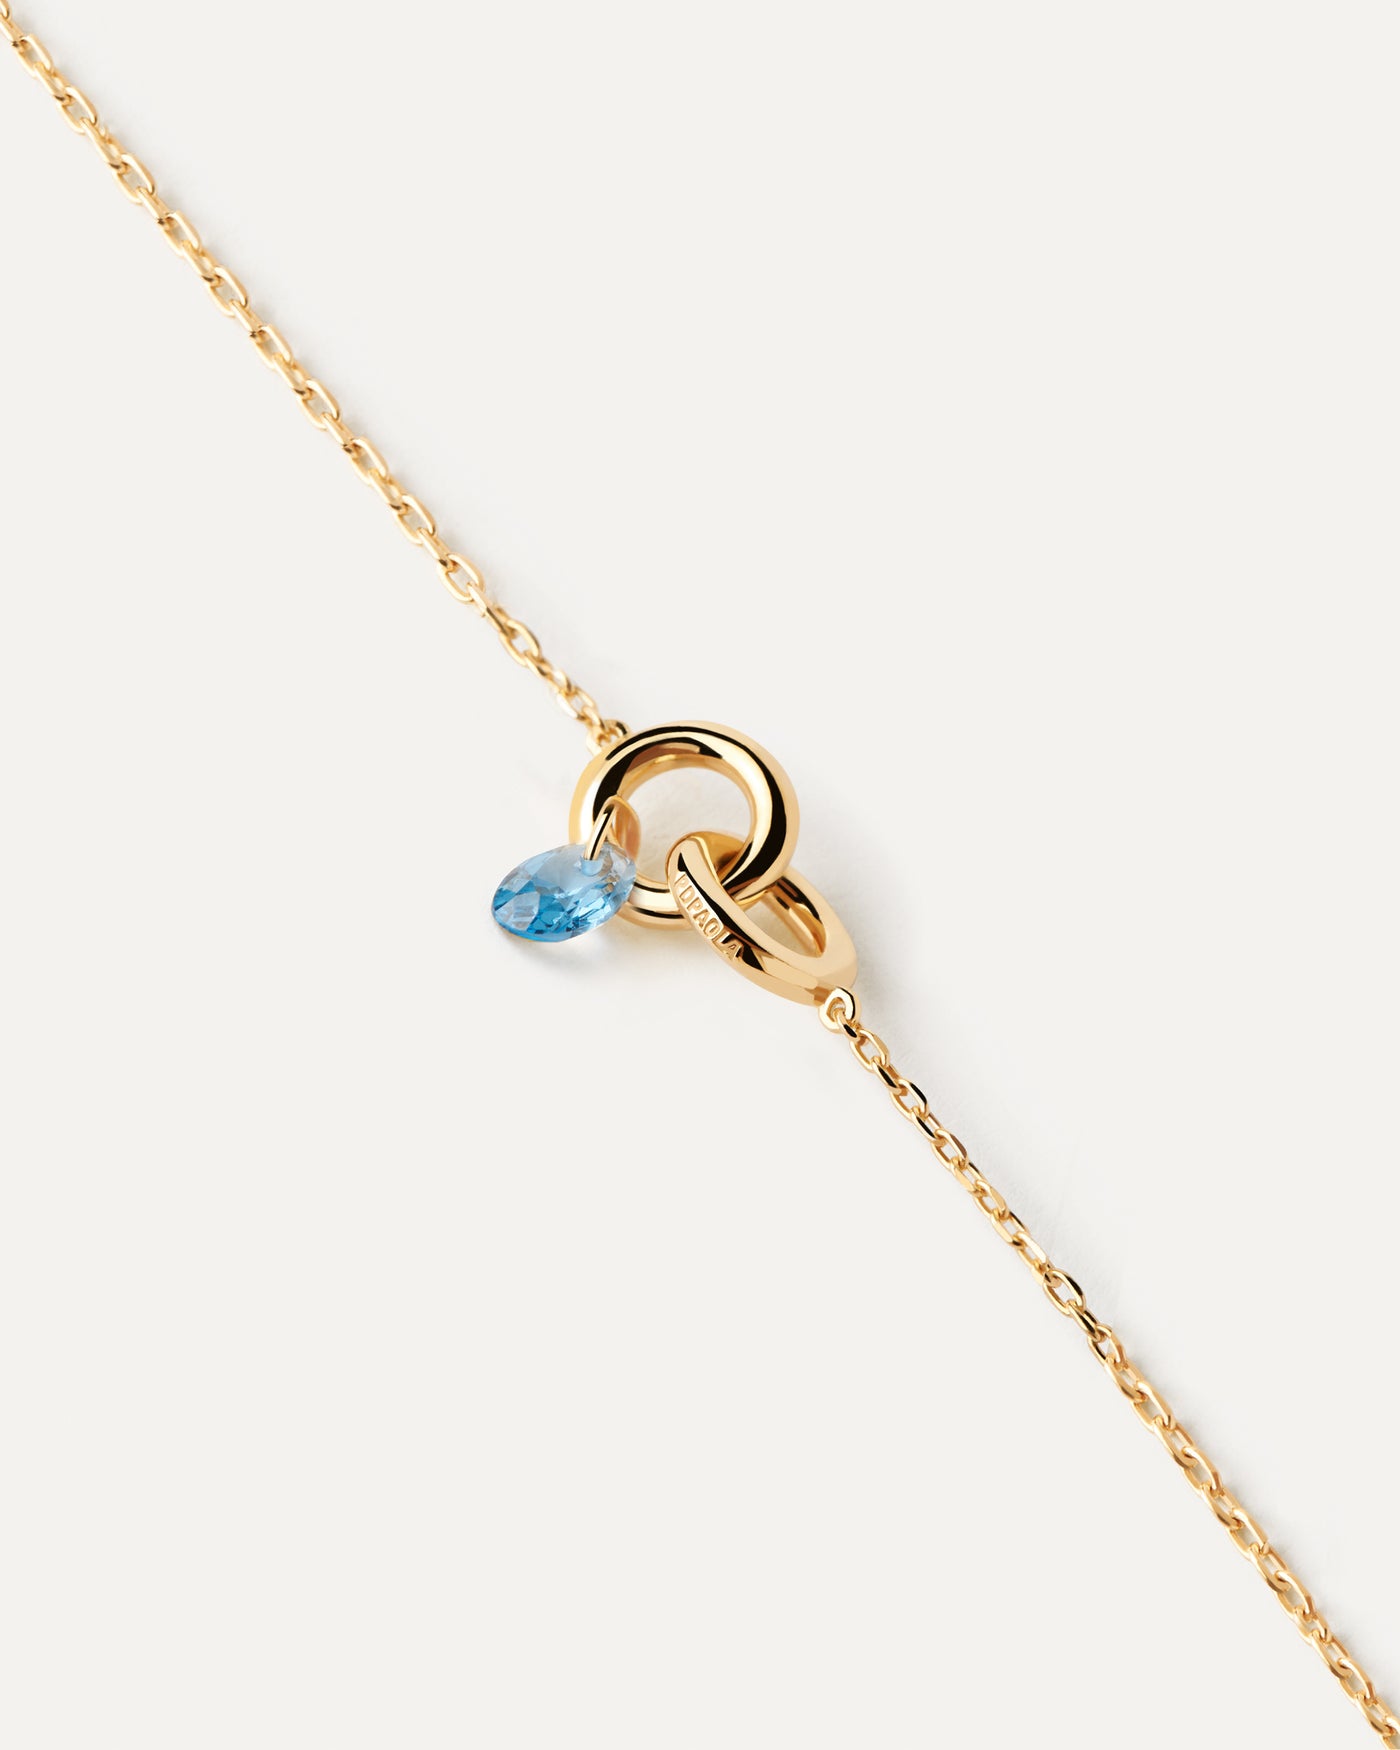 Bracelet Lily bleu. Bracelet composé de deux anneaux entrelacés avec zircon bleu pendentif en forme de goutte. Découvrez les dernières nouveautés de chez PDPAOLA. Commandez et recevez votre bijou en toute sérénité.